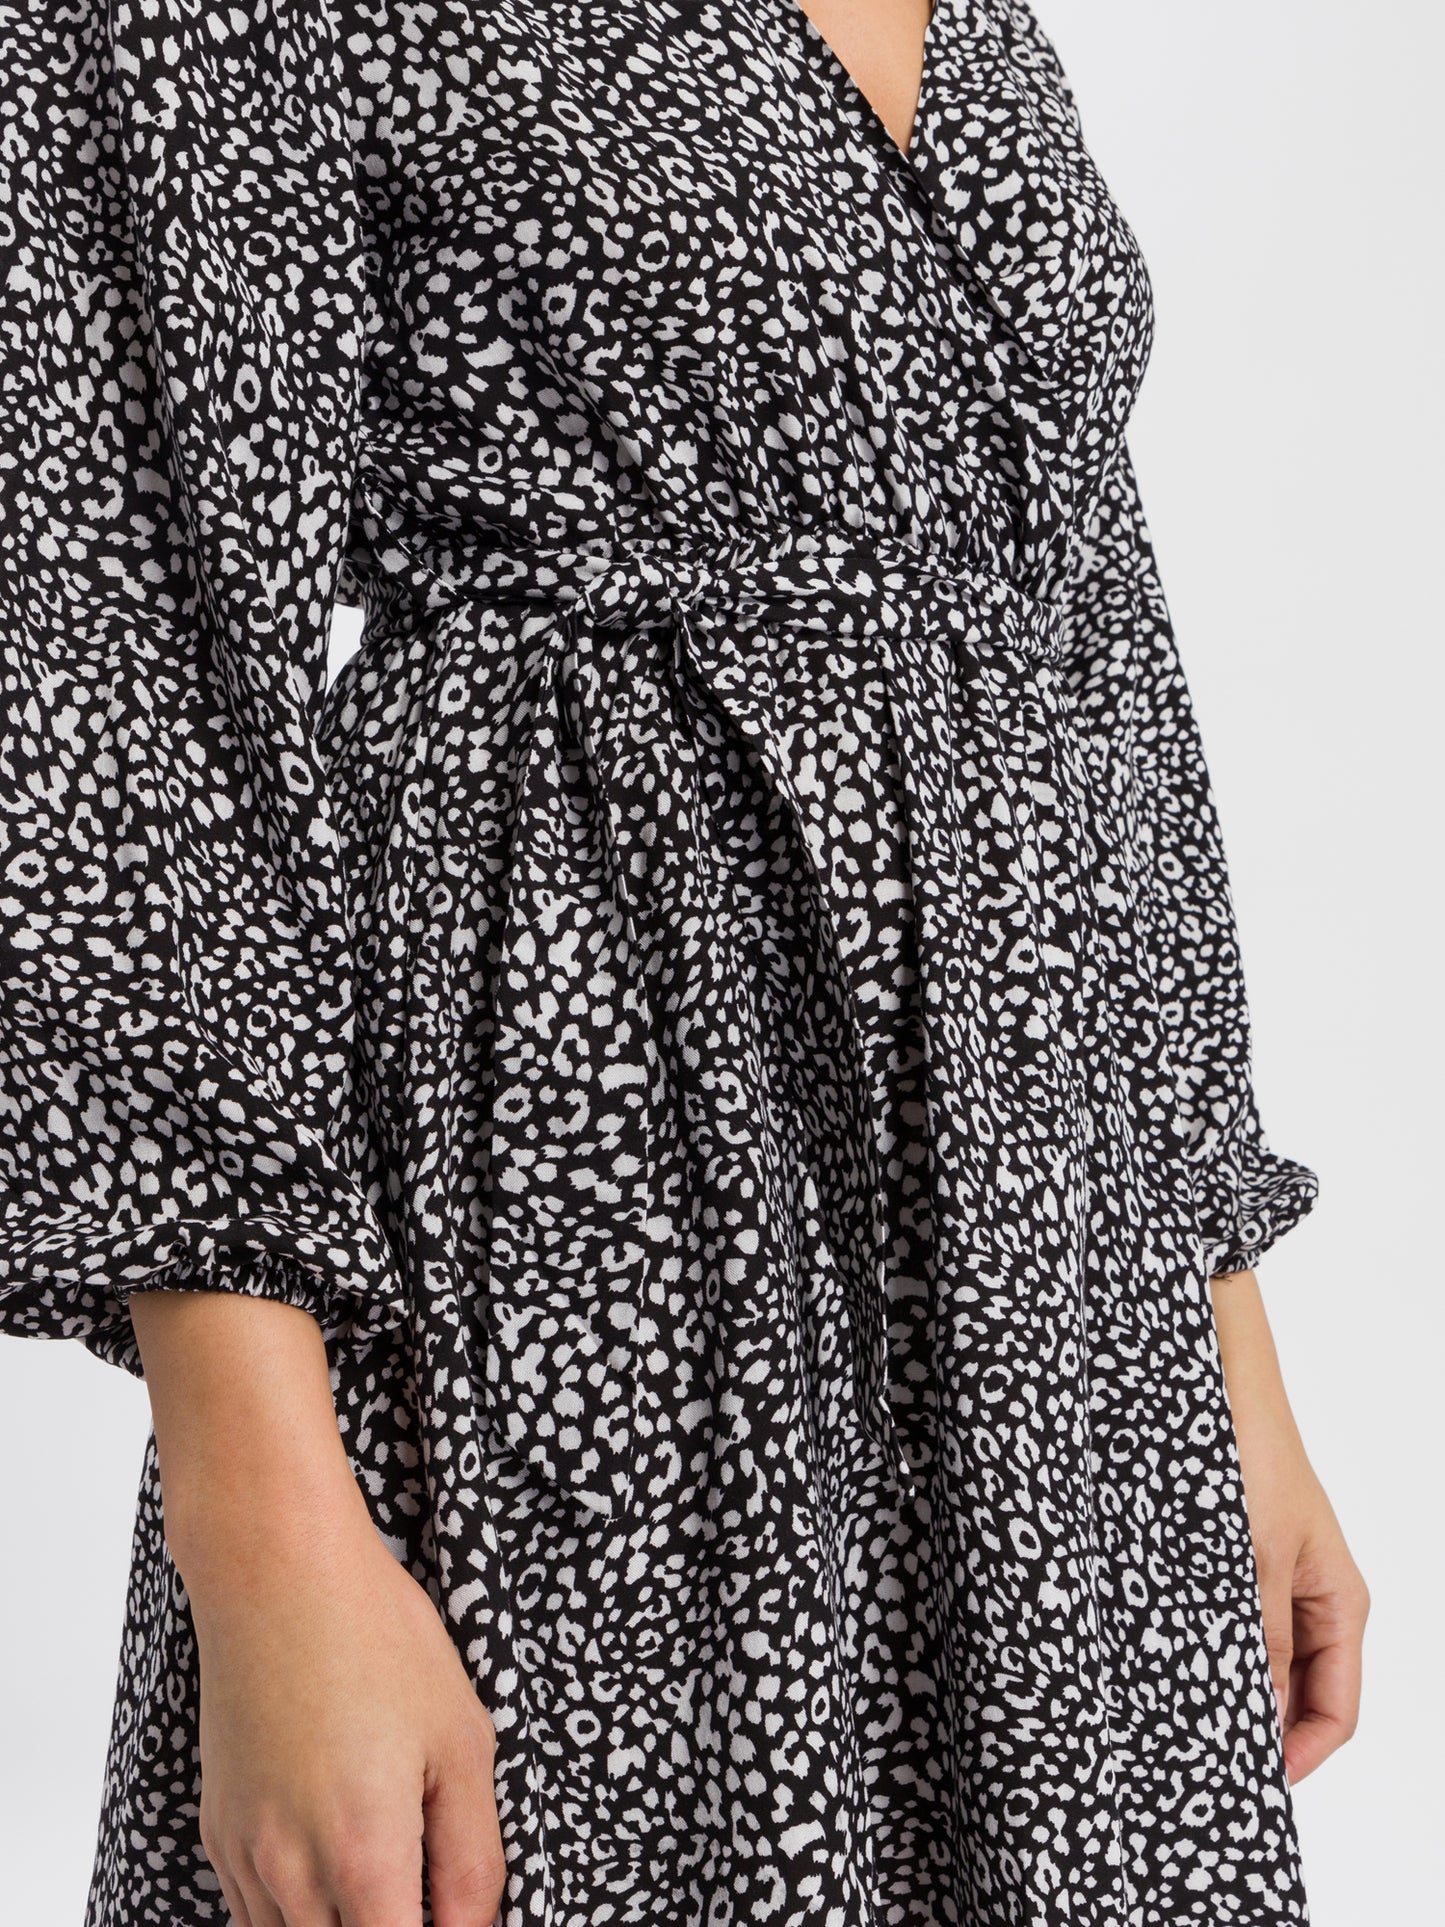 Damen Kleid mit Muster schwarz weiß